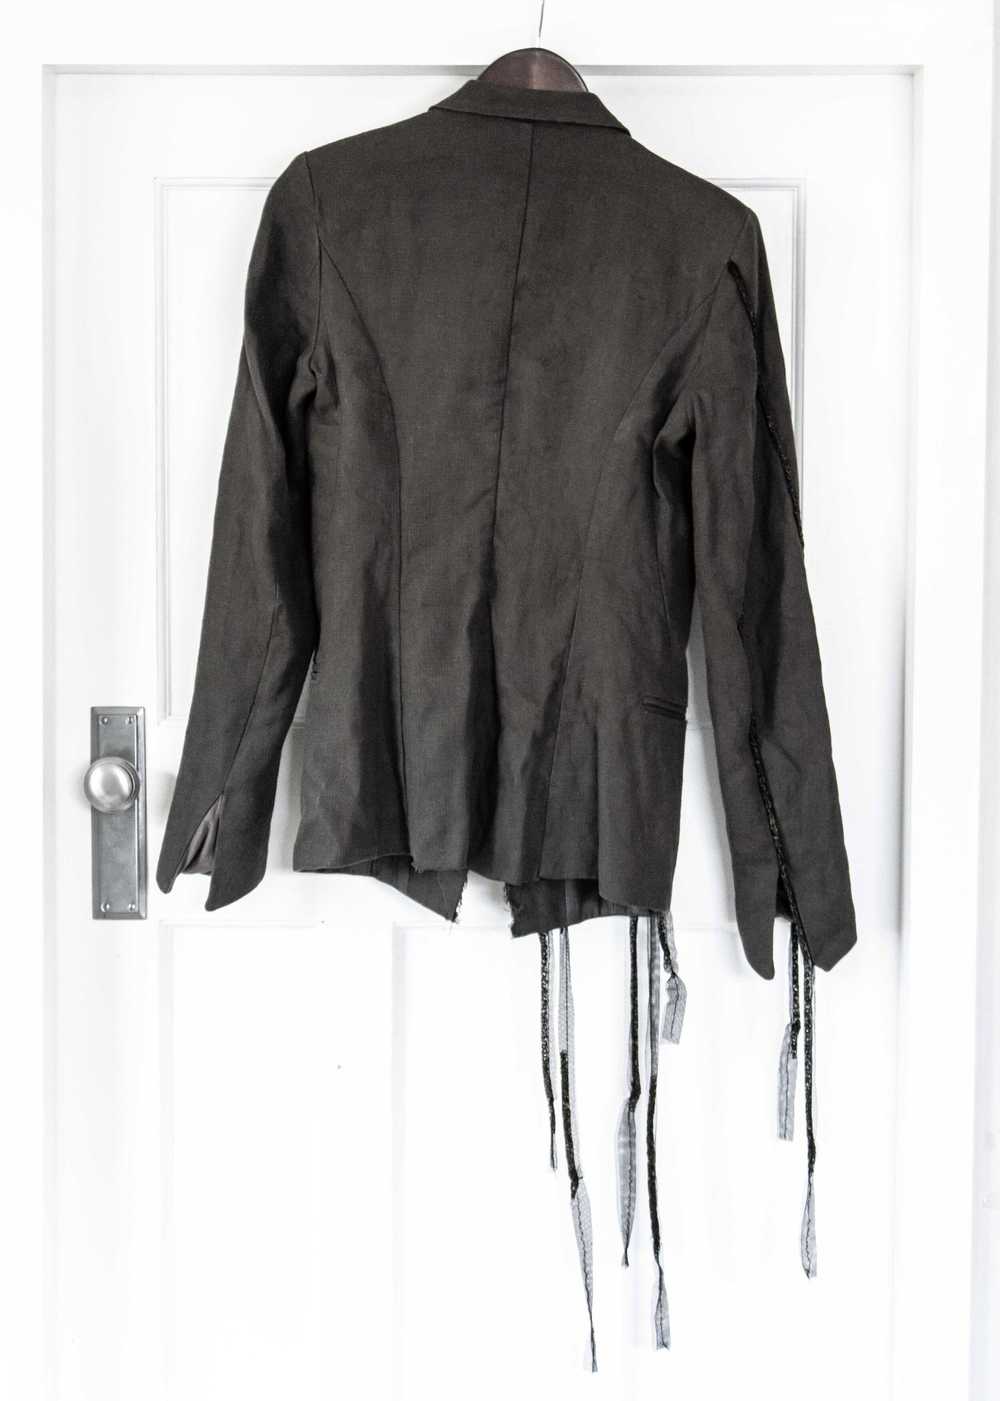 Marc Le Bihan Cotton/Linen Chain Detail Jacket - image 2